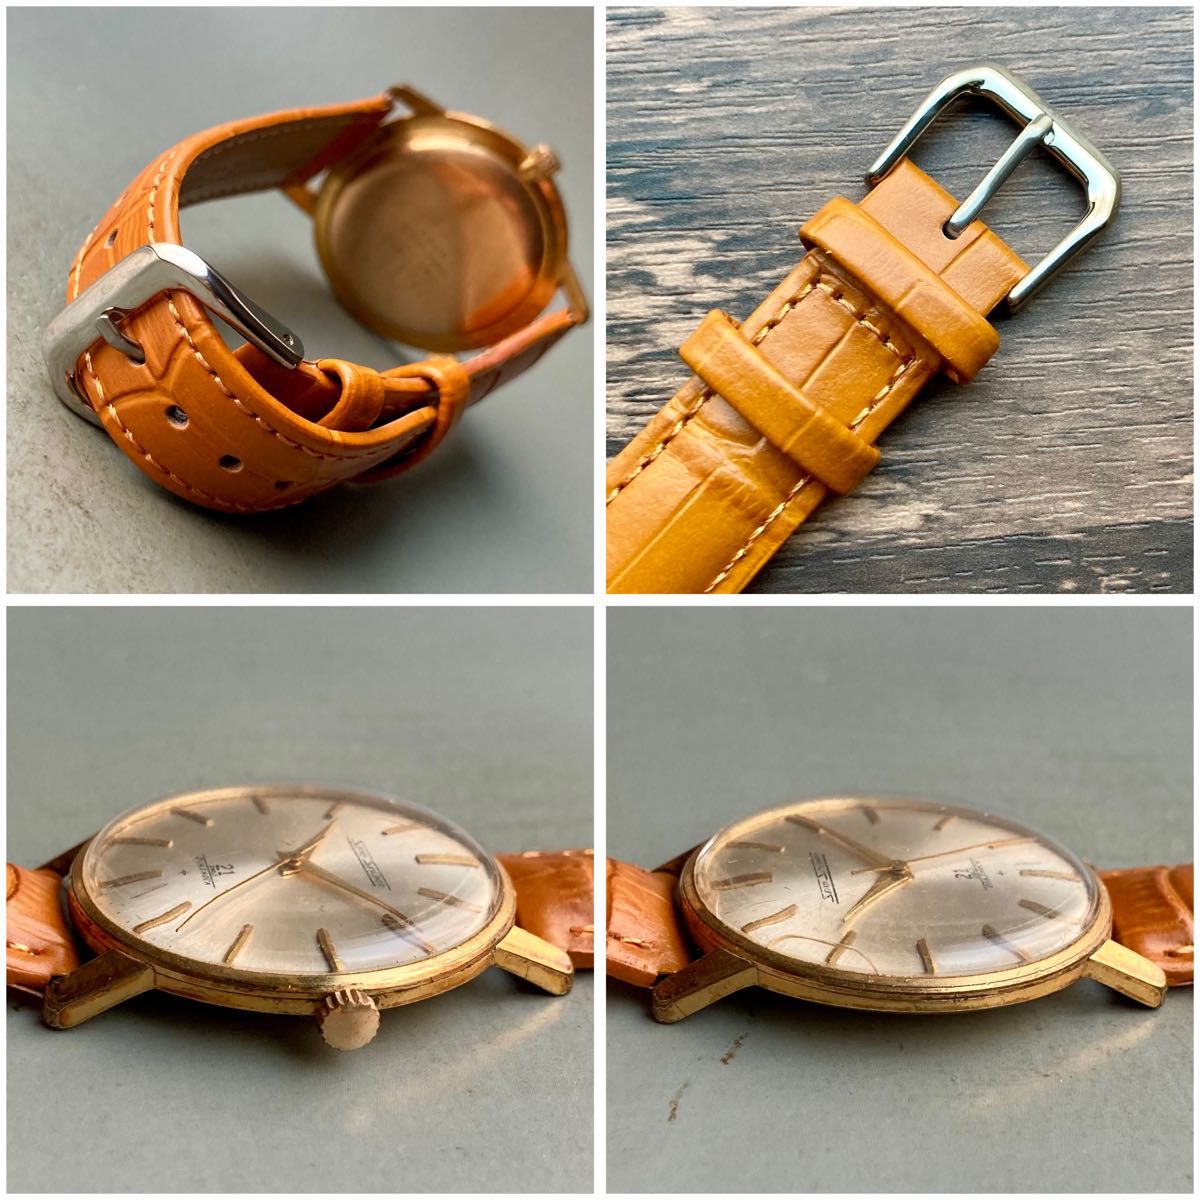 【動作品】セイコー スカイライナー アンティーク 腕時計 1967年 手巻き